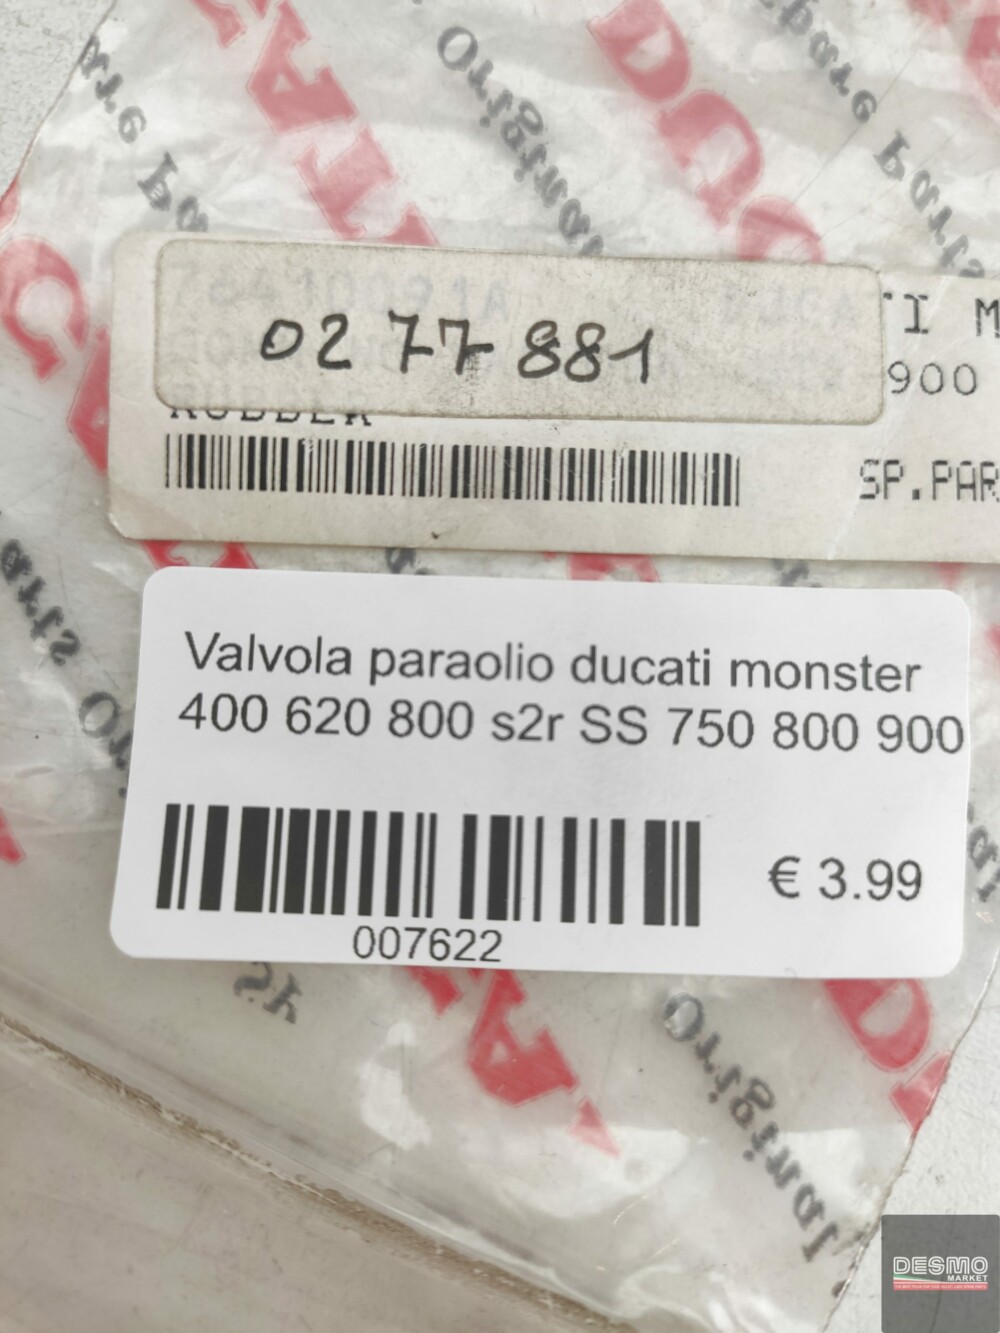 Valvola paraolio ducati monster 400 620 800 s2r SS 750 800 900